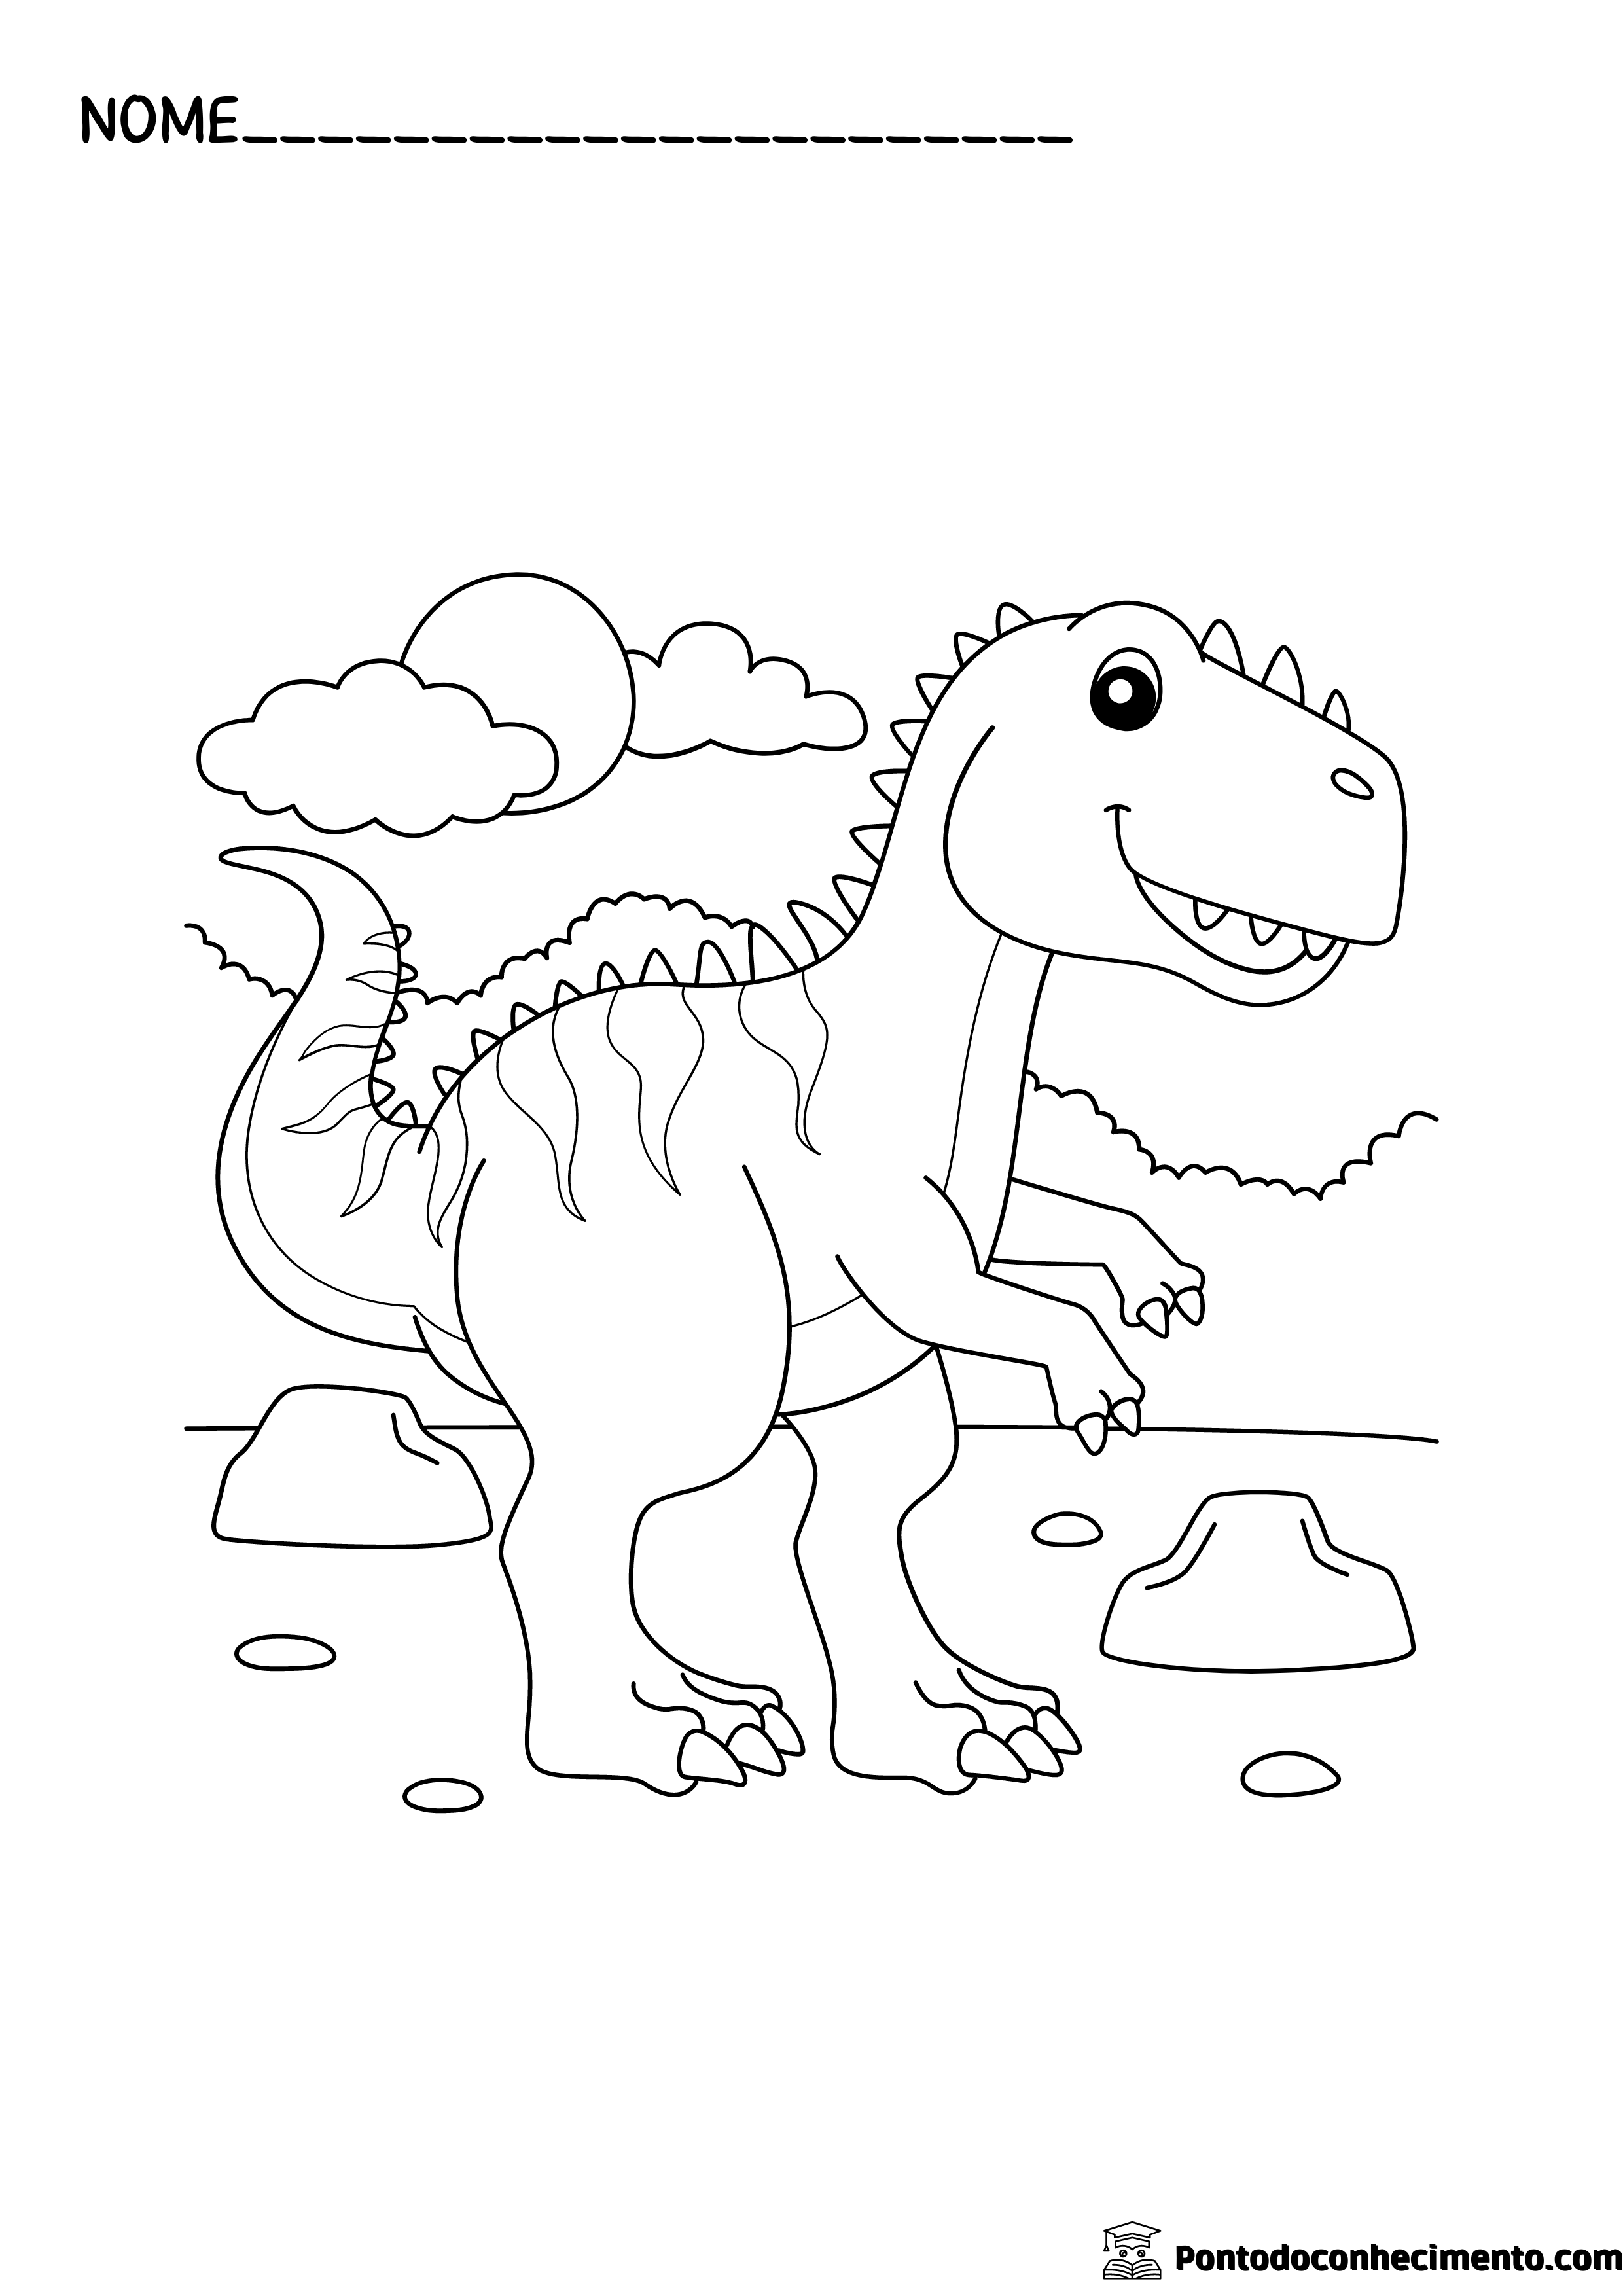 Desenhos infantis para colorir: dinossauro feroz